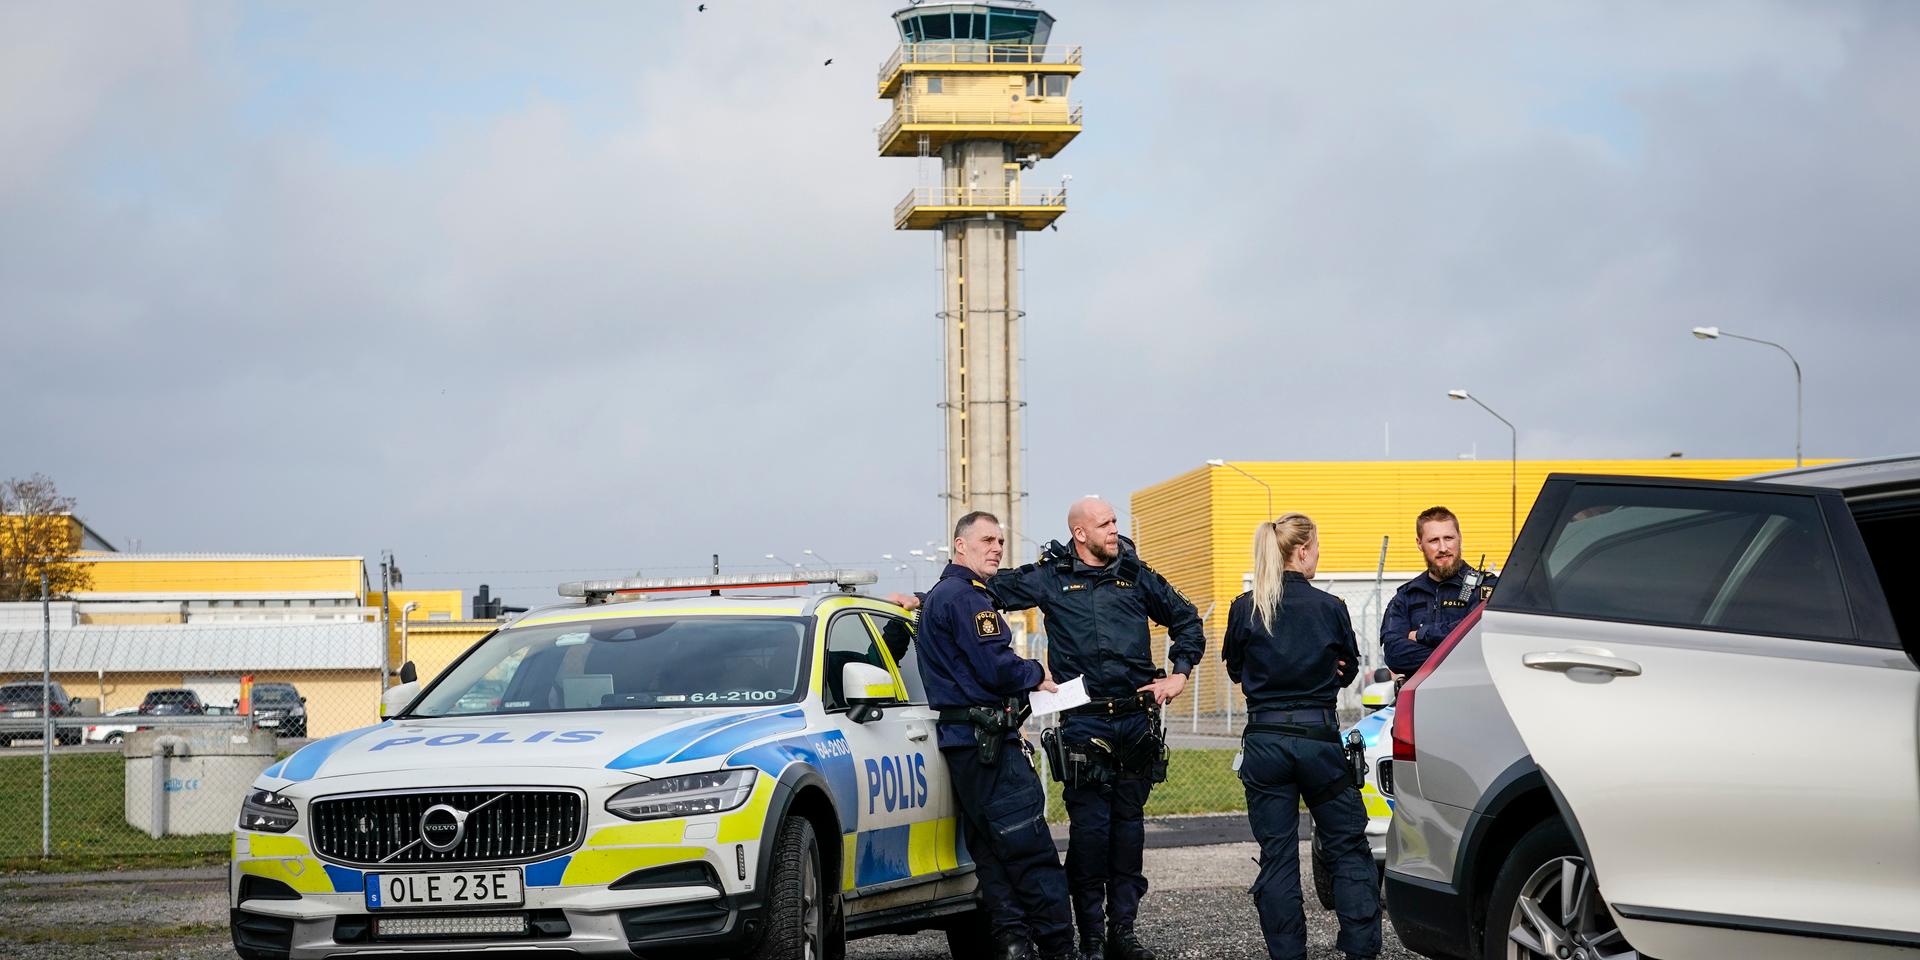 Polis på plats på Malmö flygplats efter att en obehörig person tagit sig in på landningsbanan. Personen, enligt polisen en 57-årig kvinna, är nu misstänkt för luftfartssabotage. Enligt klimatrörelsen Extinction Rebellion hade en aktivist limmat fast sig på landningsbanan för att stoppa flygtrafiken.
